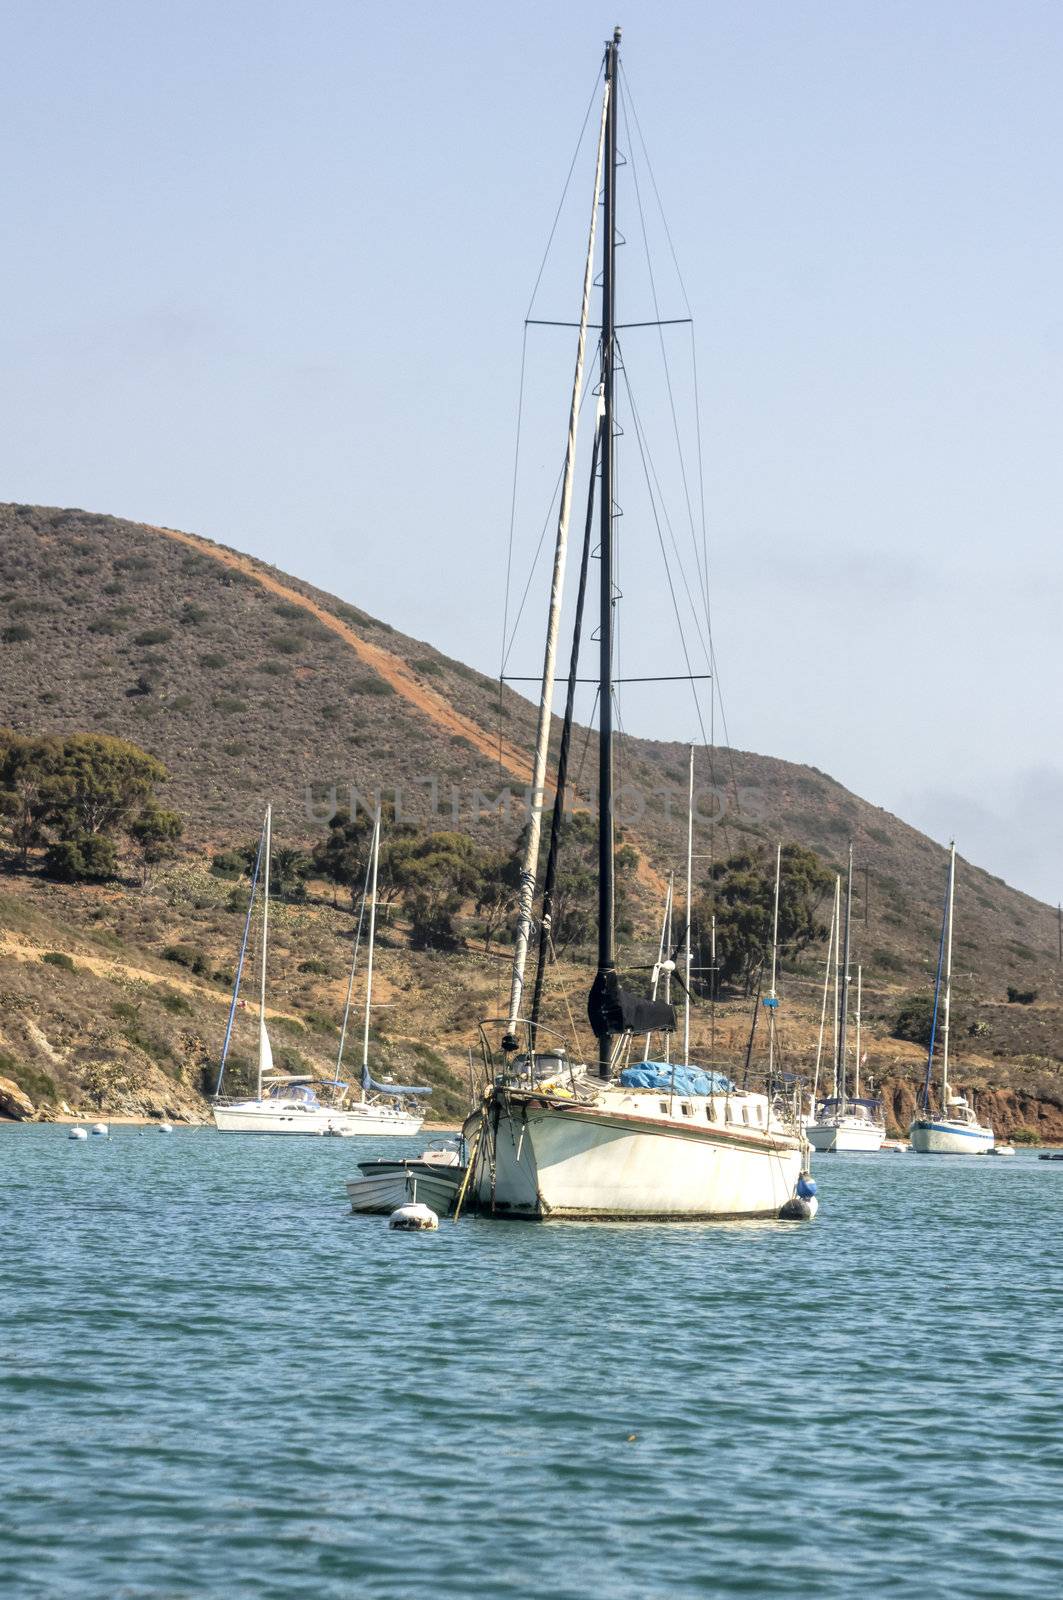 Sailboat moored at Santa Catalina Island in the quiet bay of Catalina Harbor